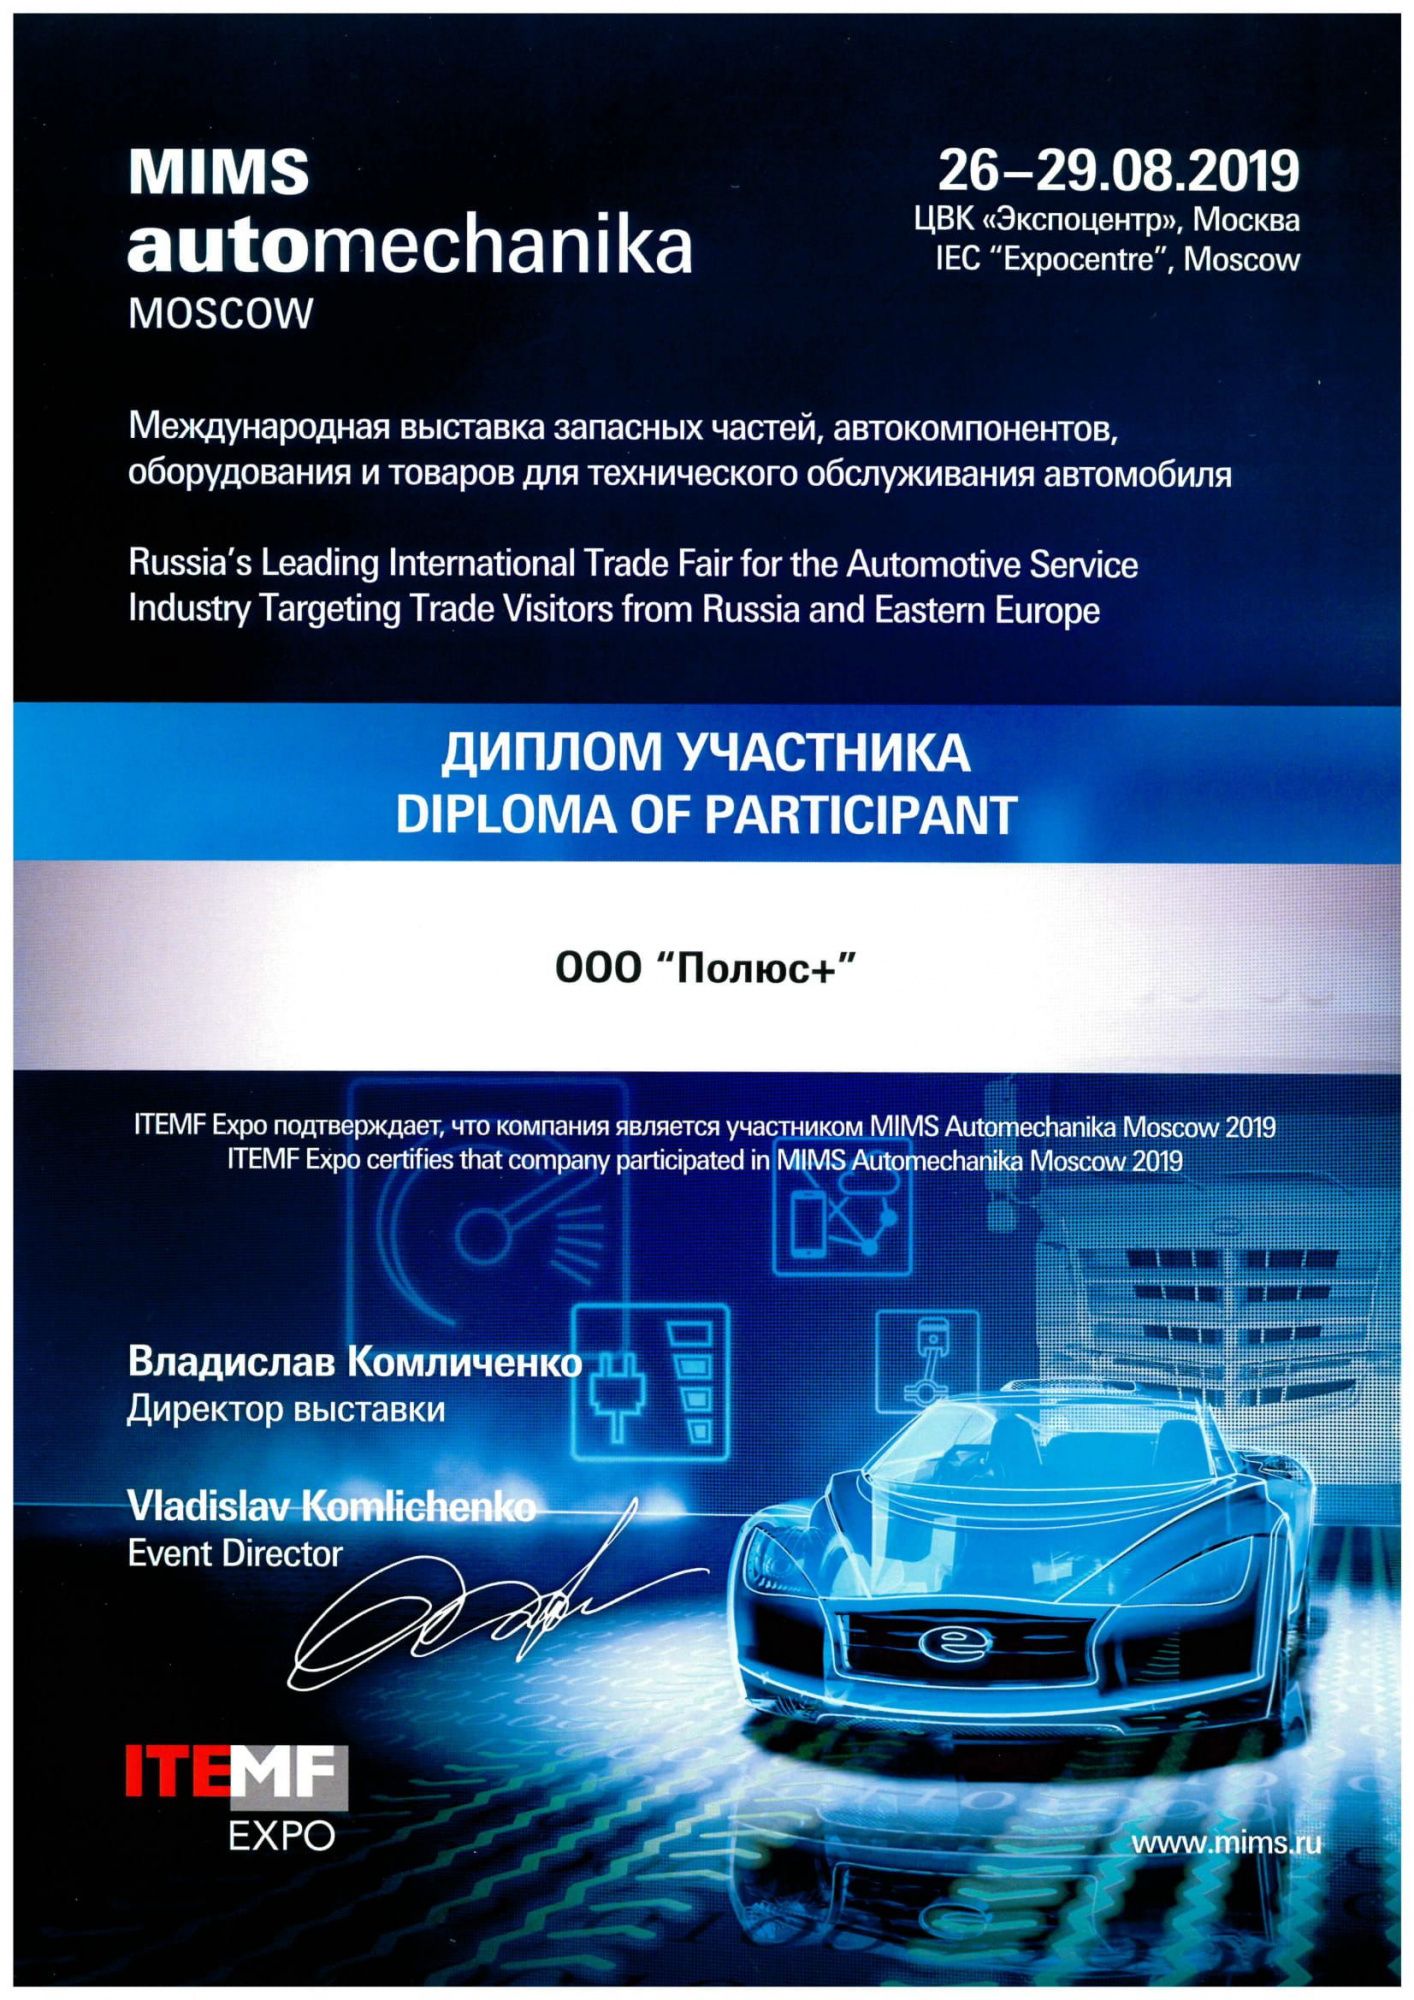 Диплом участника выставки MIMS Automechanika Moscow 2019